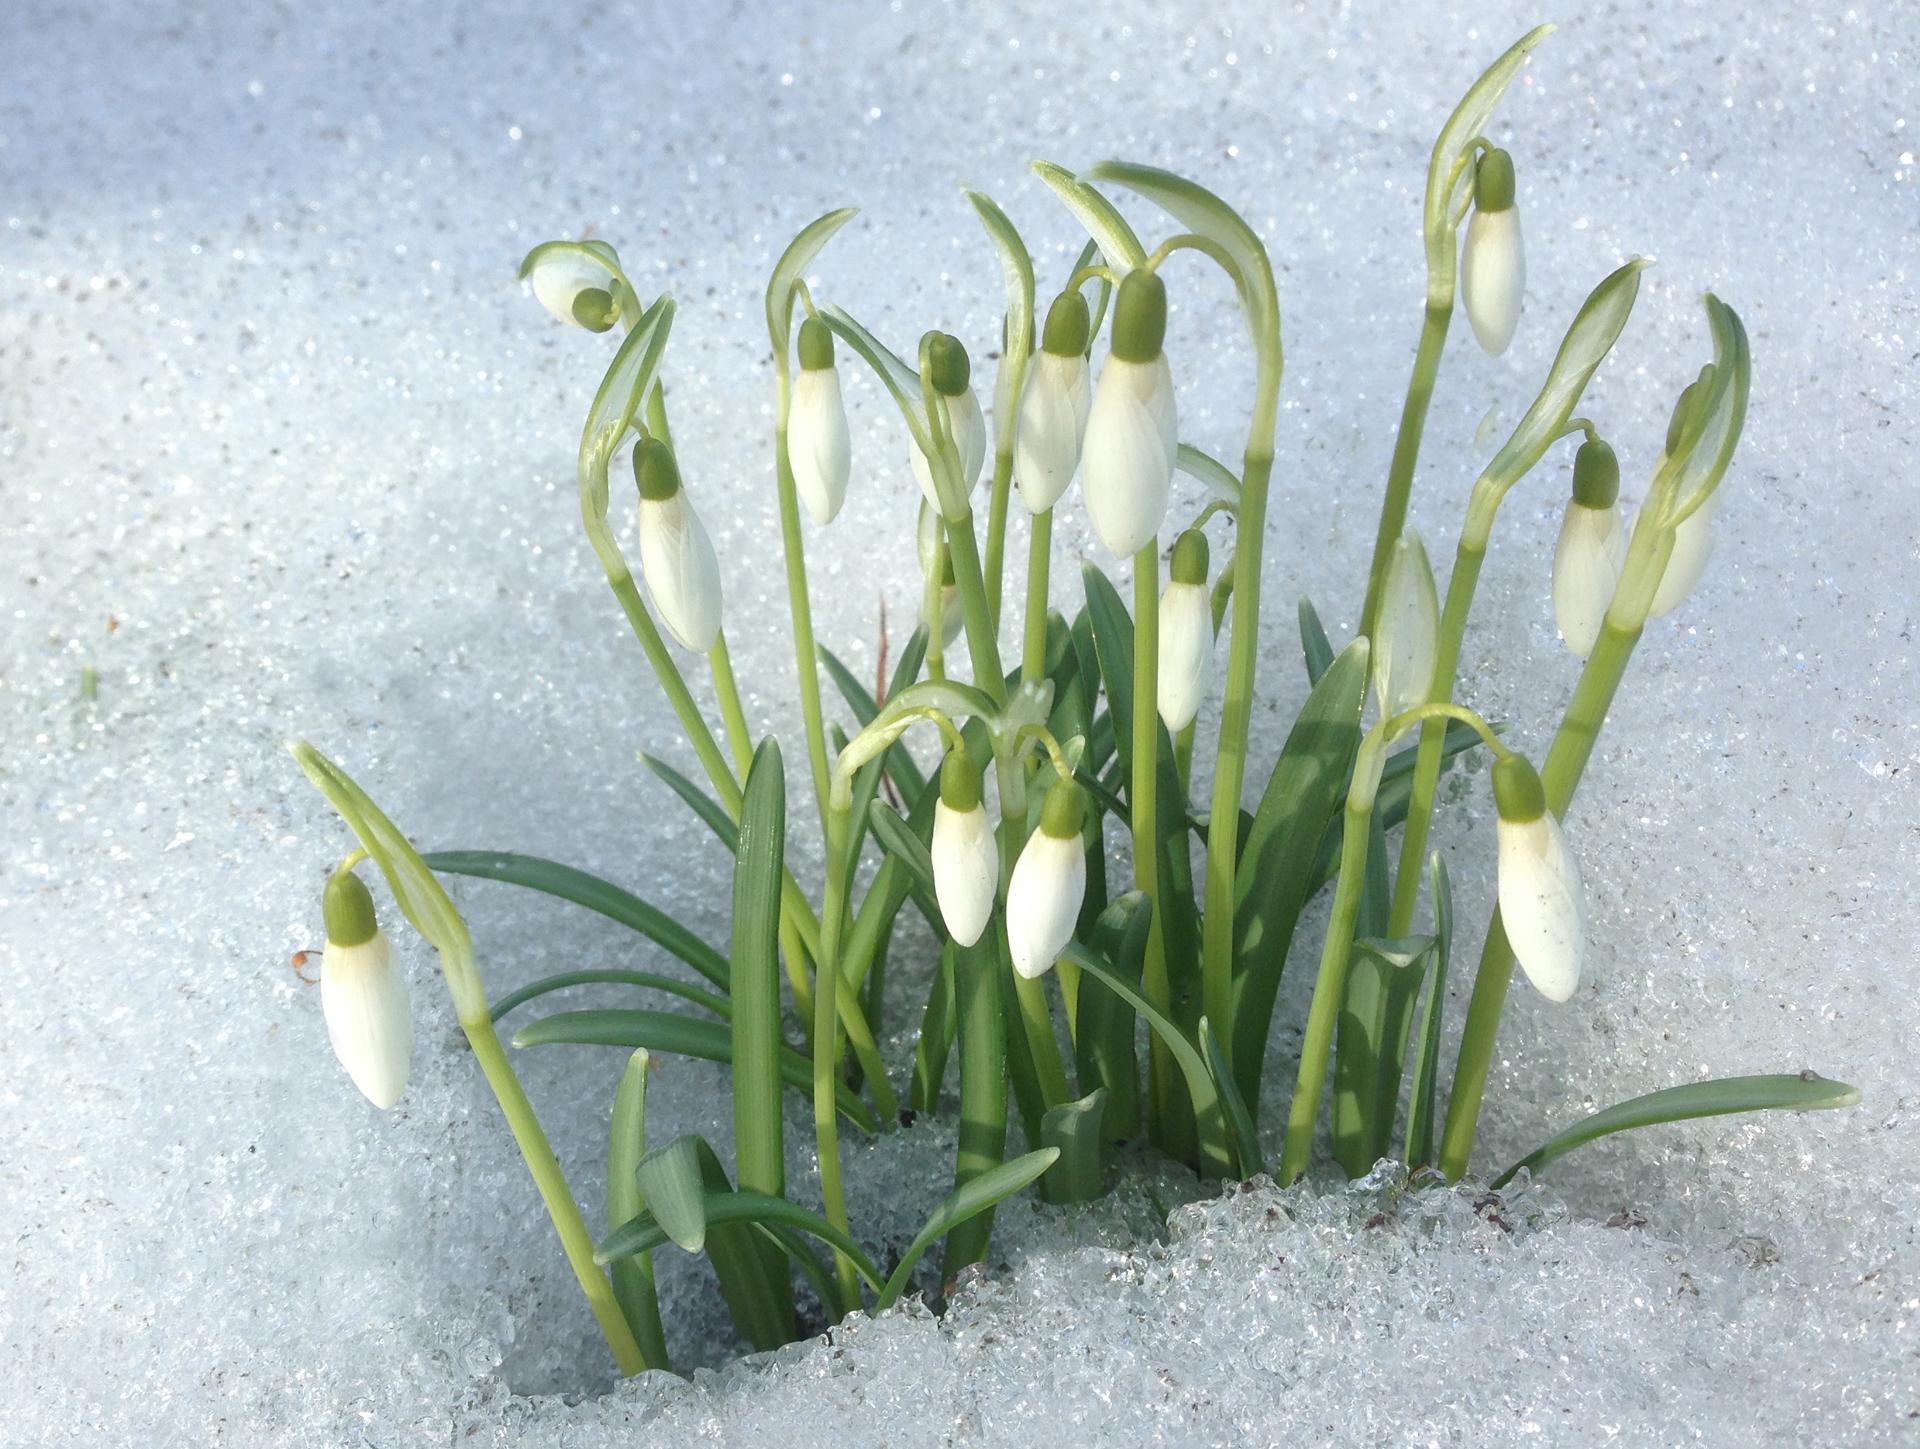 Kasvu tuottaa lämpöä, siksi lumikello työntää päänsä jopa jään ja lumen läpi.